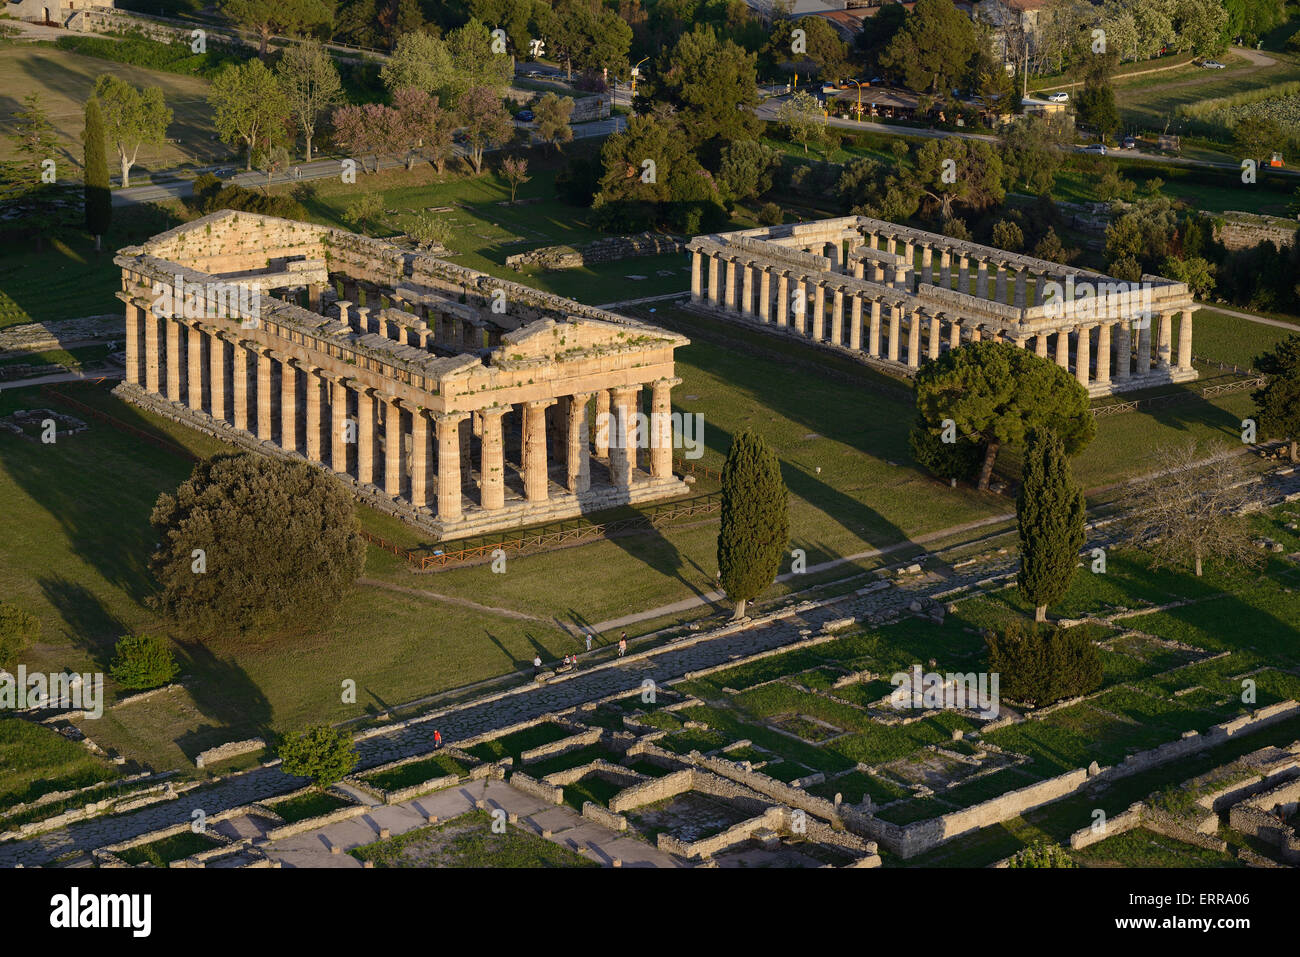 VUE AÉRIENNE.Temples grecs de Hera II ou Neptune (à gauche) et Hera (à droite).Paestum, province de Salerne, Campanie, Italie. Banque D'Images